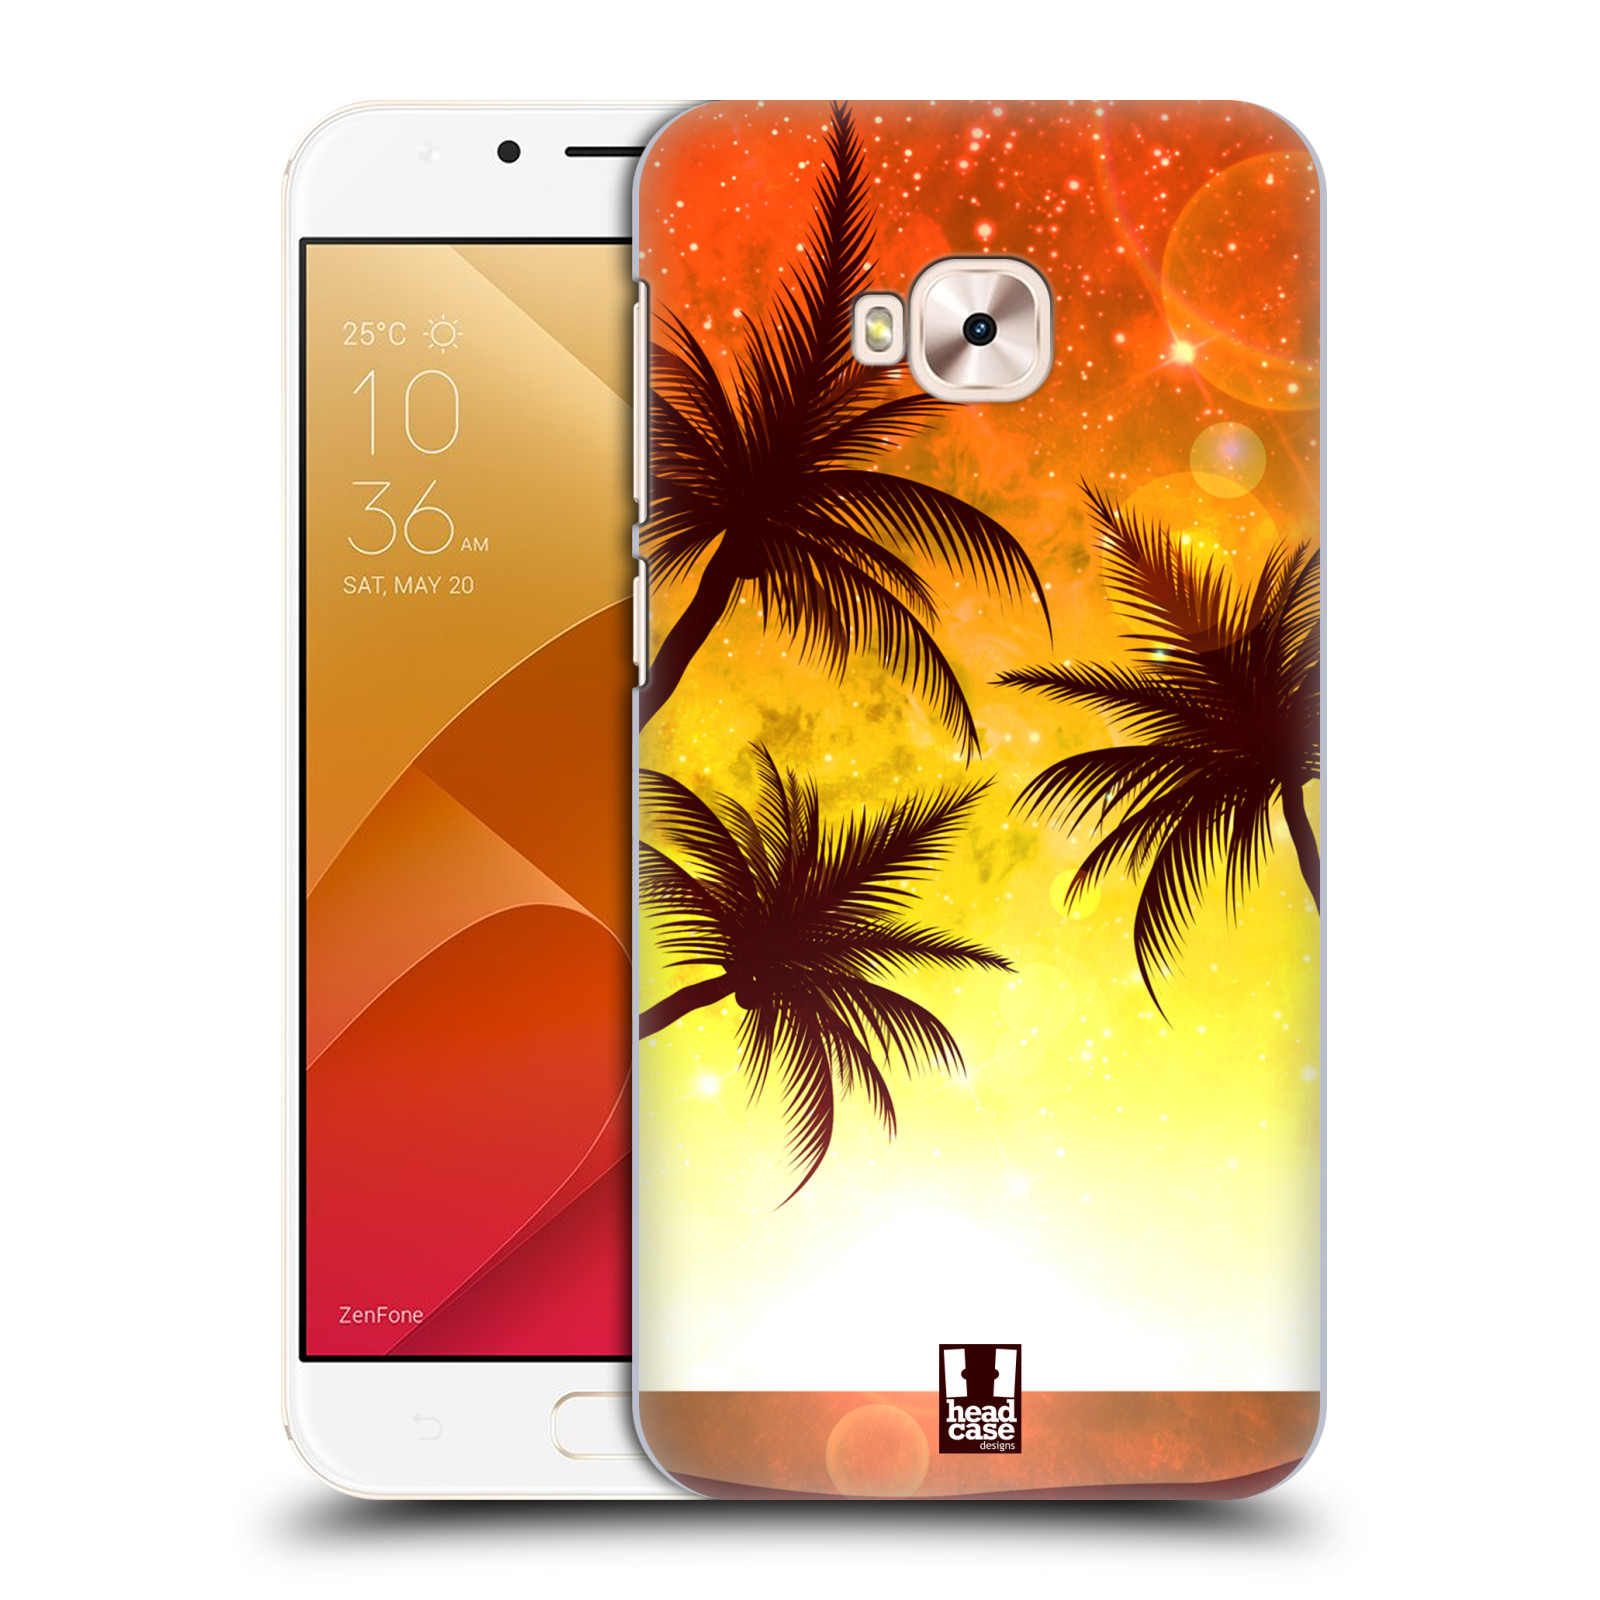 HEAD CASE plastový obal na mobil Asus Zenfone 4 Selfie Pro ZD552KL vzor Kreslený motiv silueta moře a palmy ORANŽOVÁ